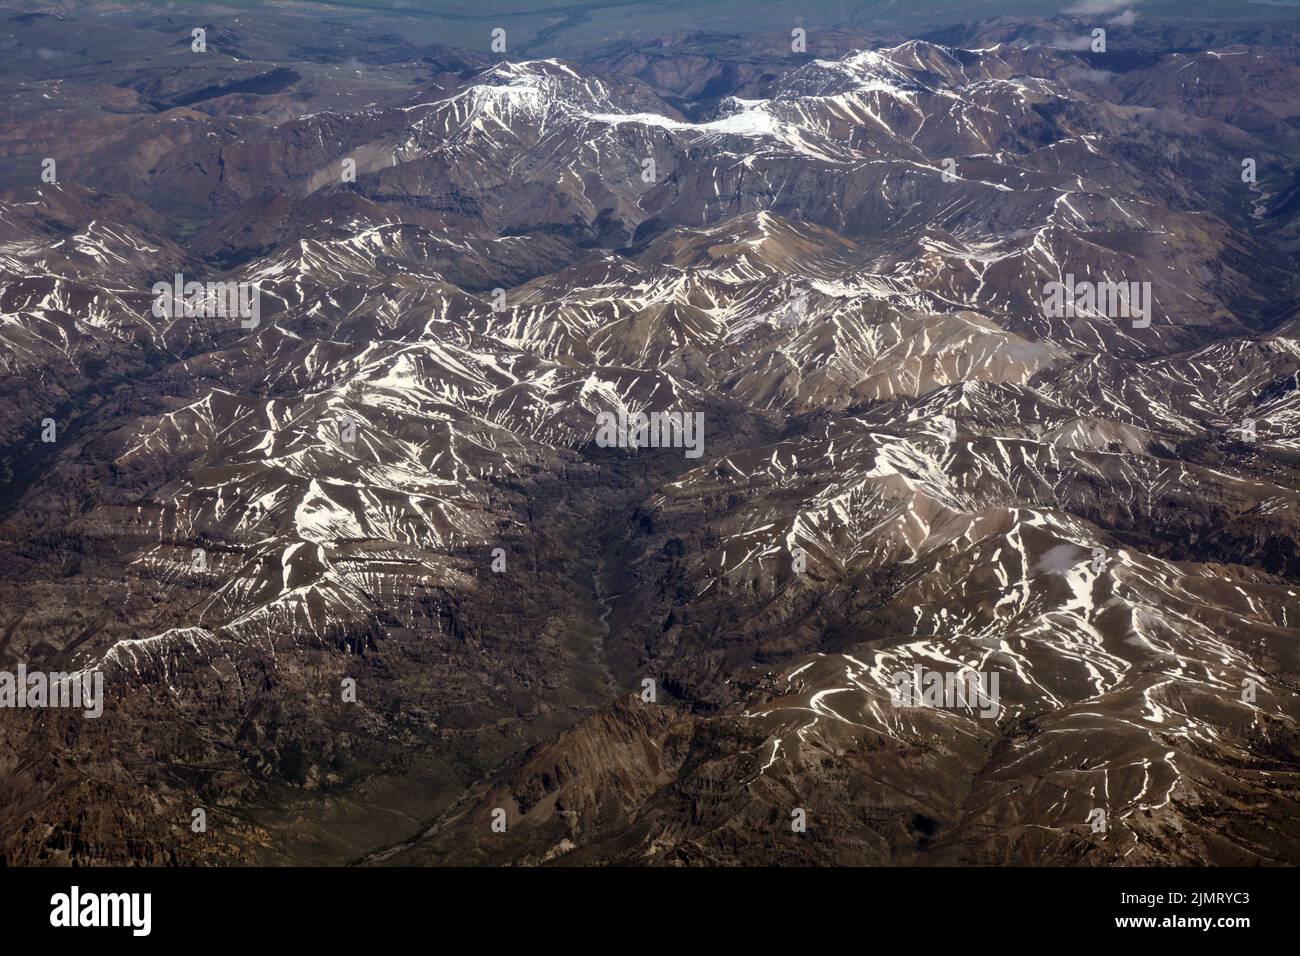 Vista aerea della Shoshone National Forest e delle Absaroka Mountains, una sottoregione delle Montagne Rocciose, nel Wyoming nord-occidentale, Stati Uniti. Foto Stock